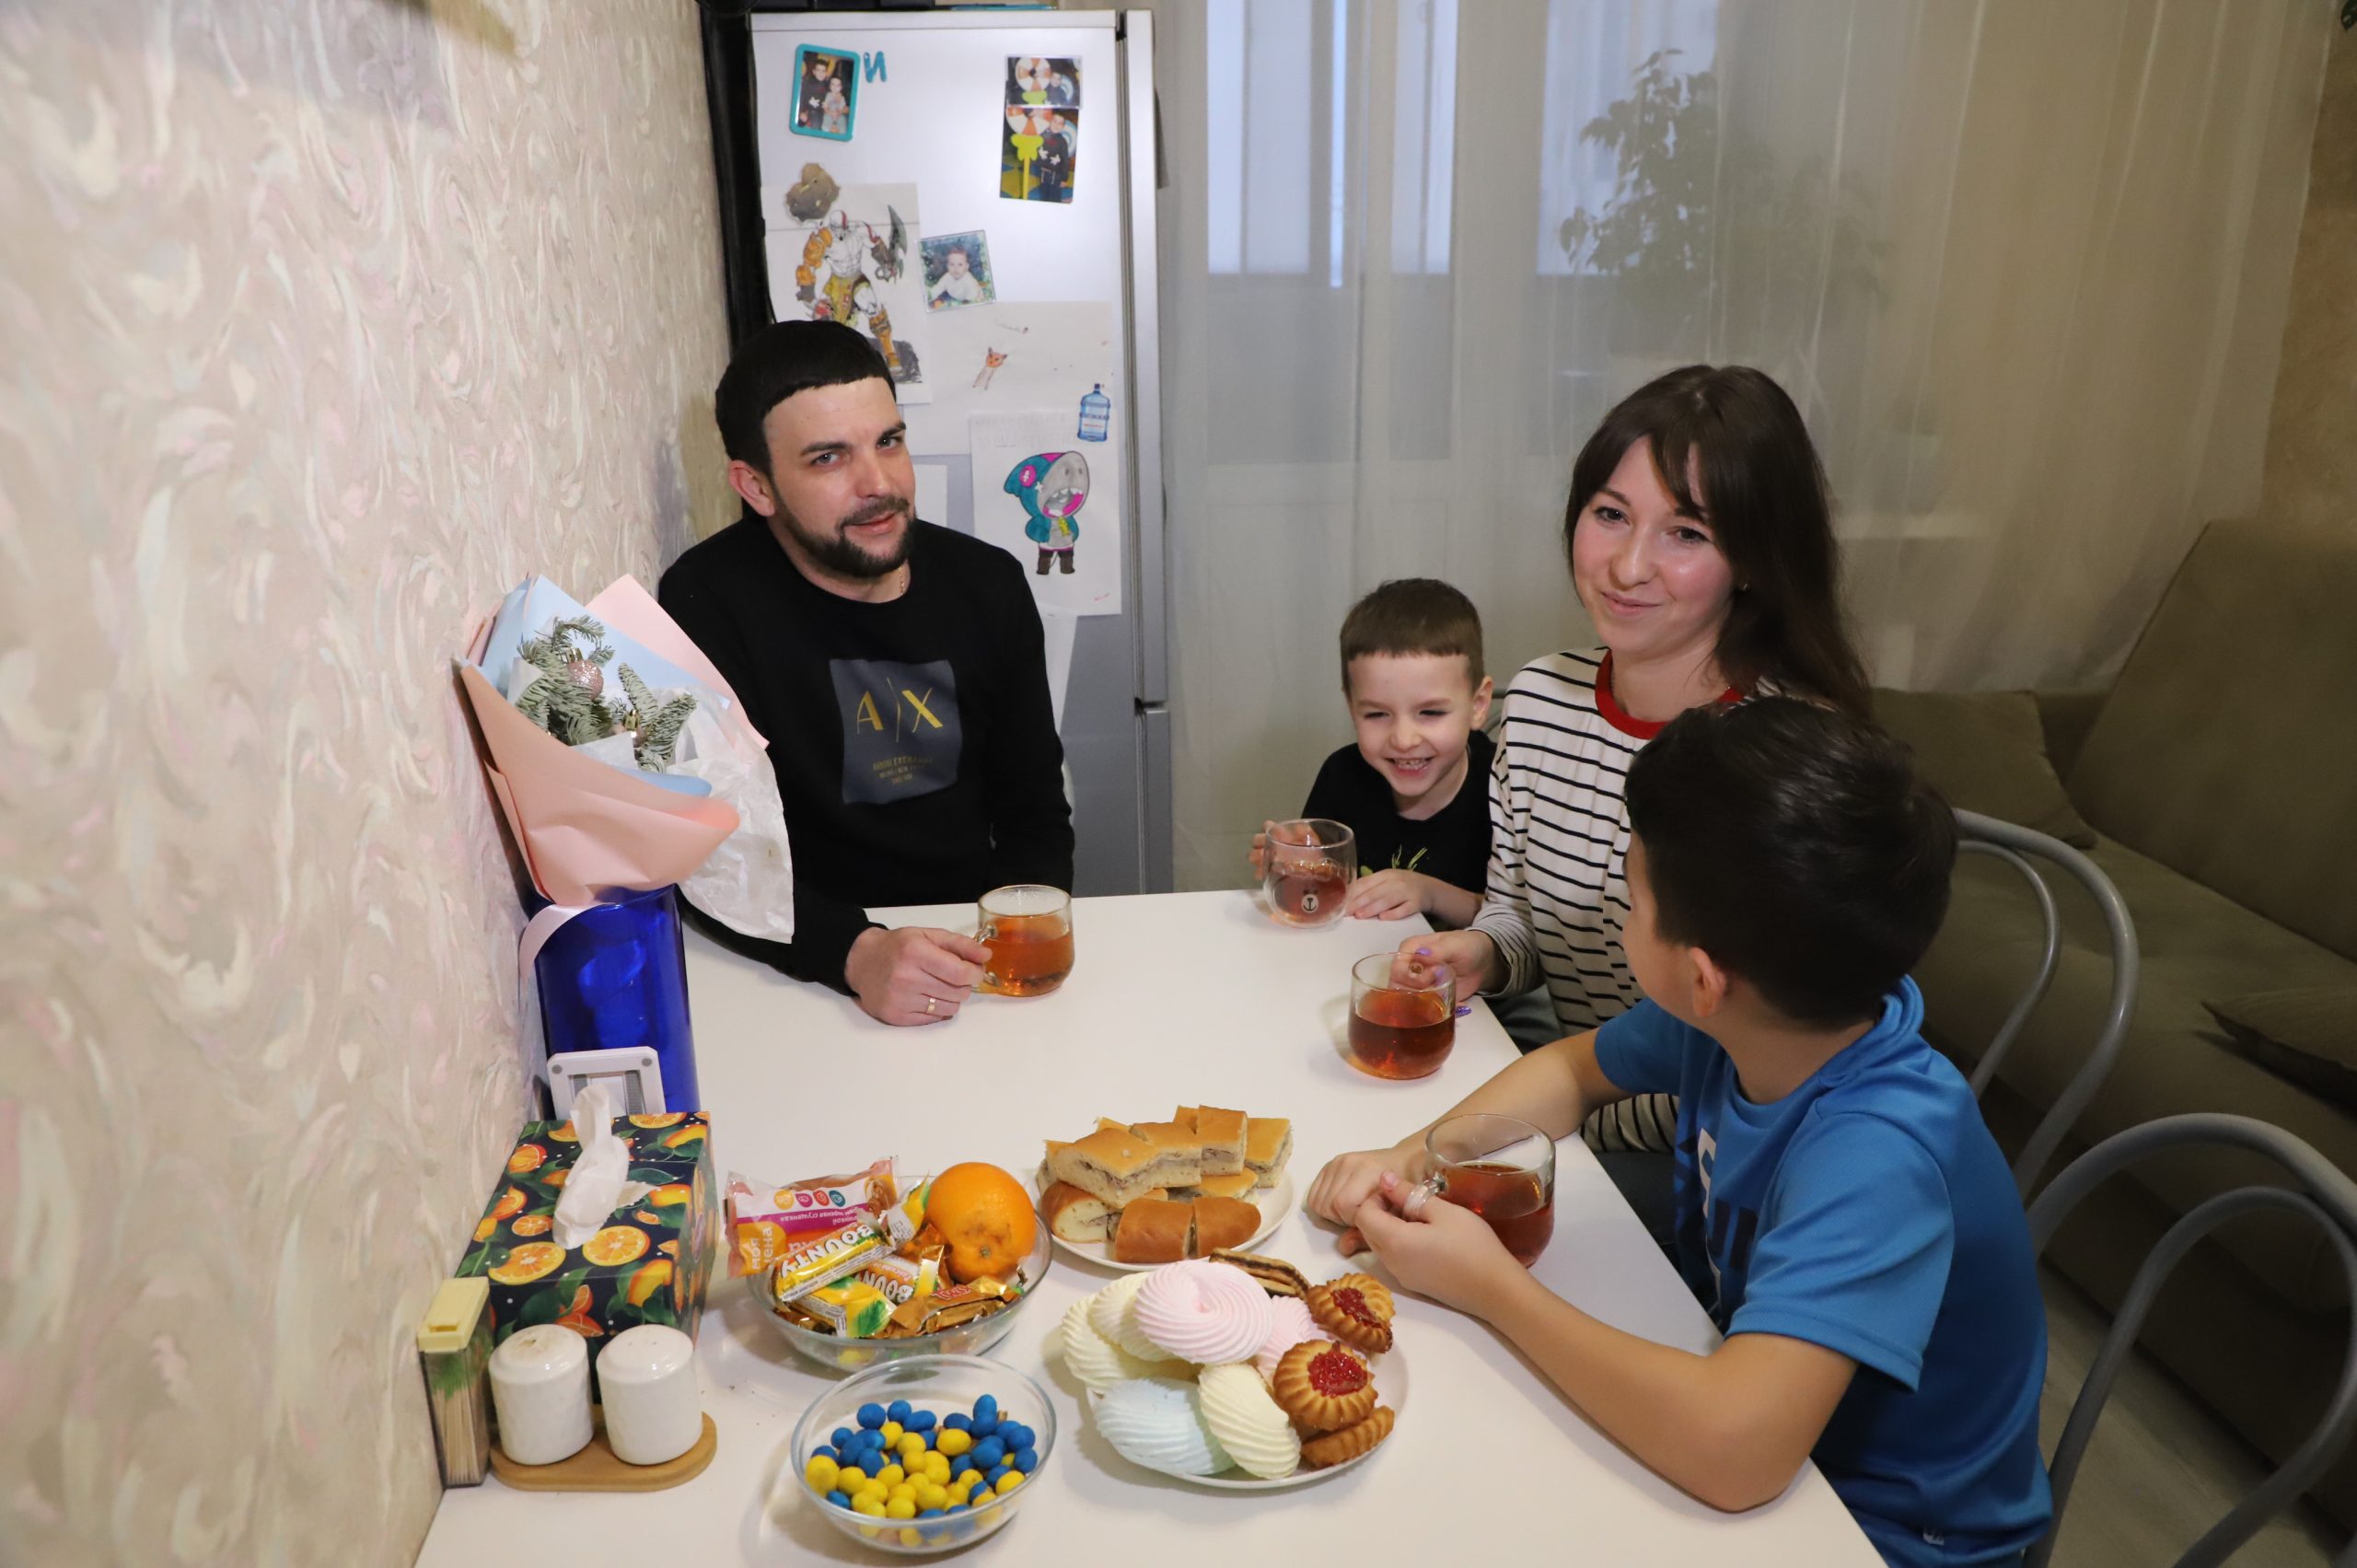 Самарцы принимают участие во всероссийском проекте «Всей семьей»